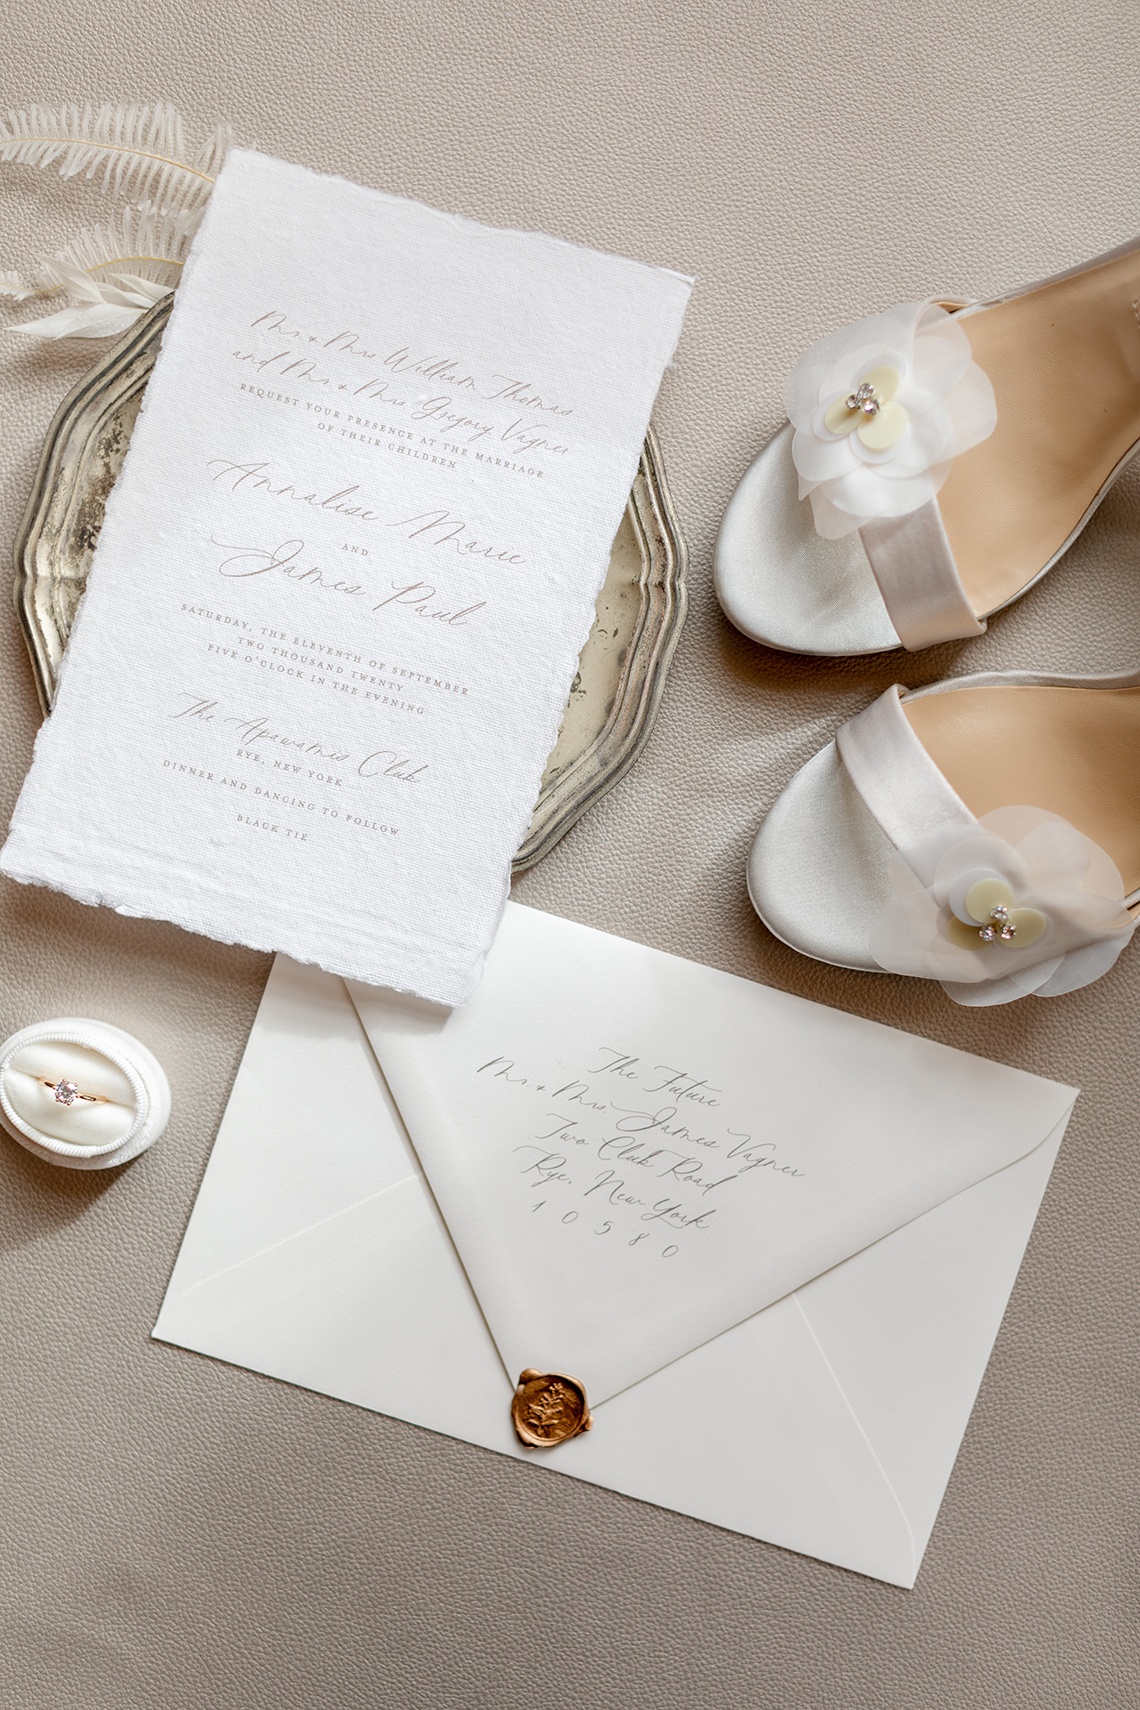 Inspiración para una boda blanca moderna - Mandy Forlenza Sticos - Fotografía de Siobhan Stanton - Amsale